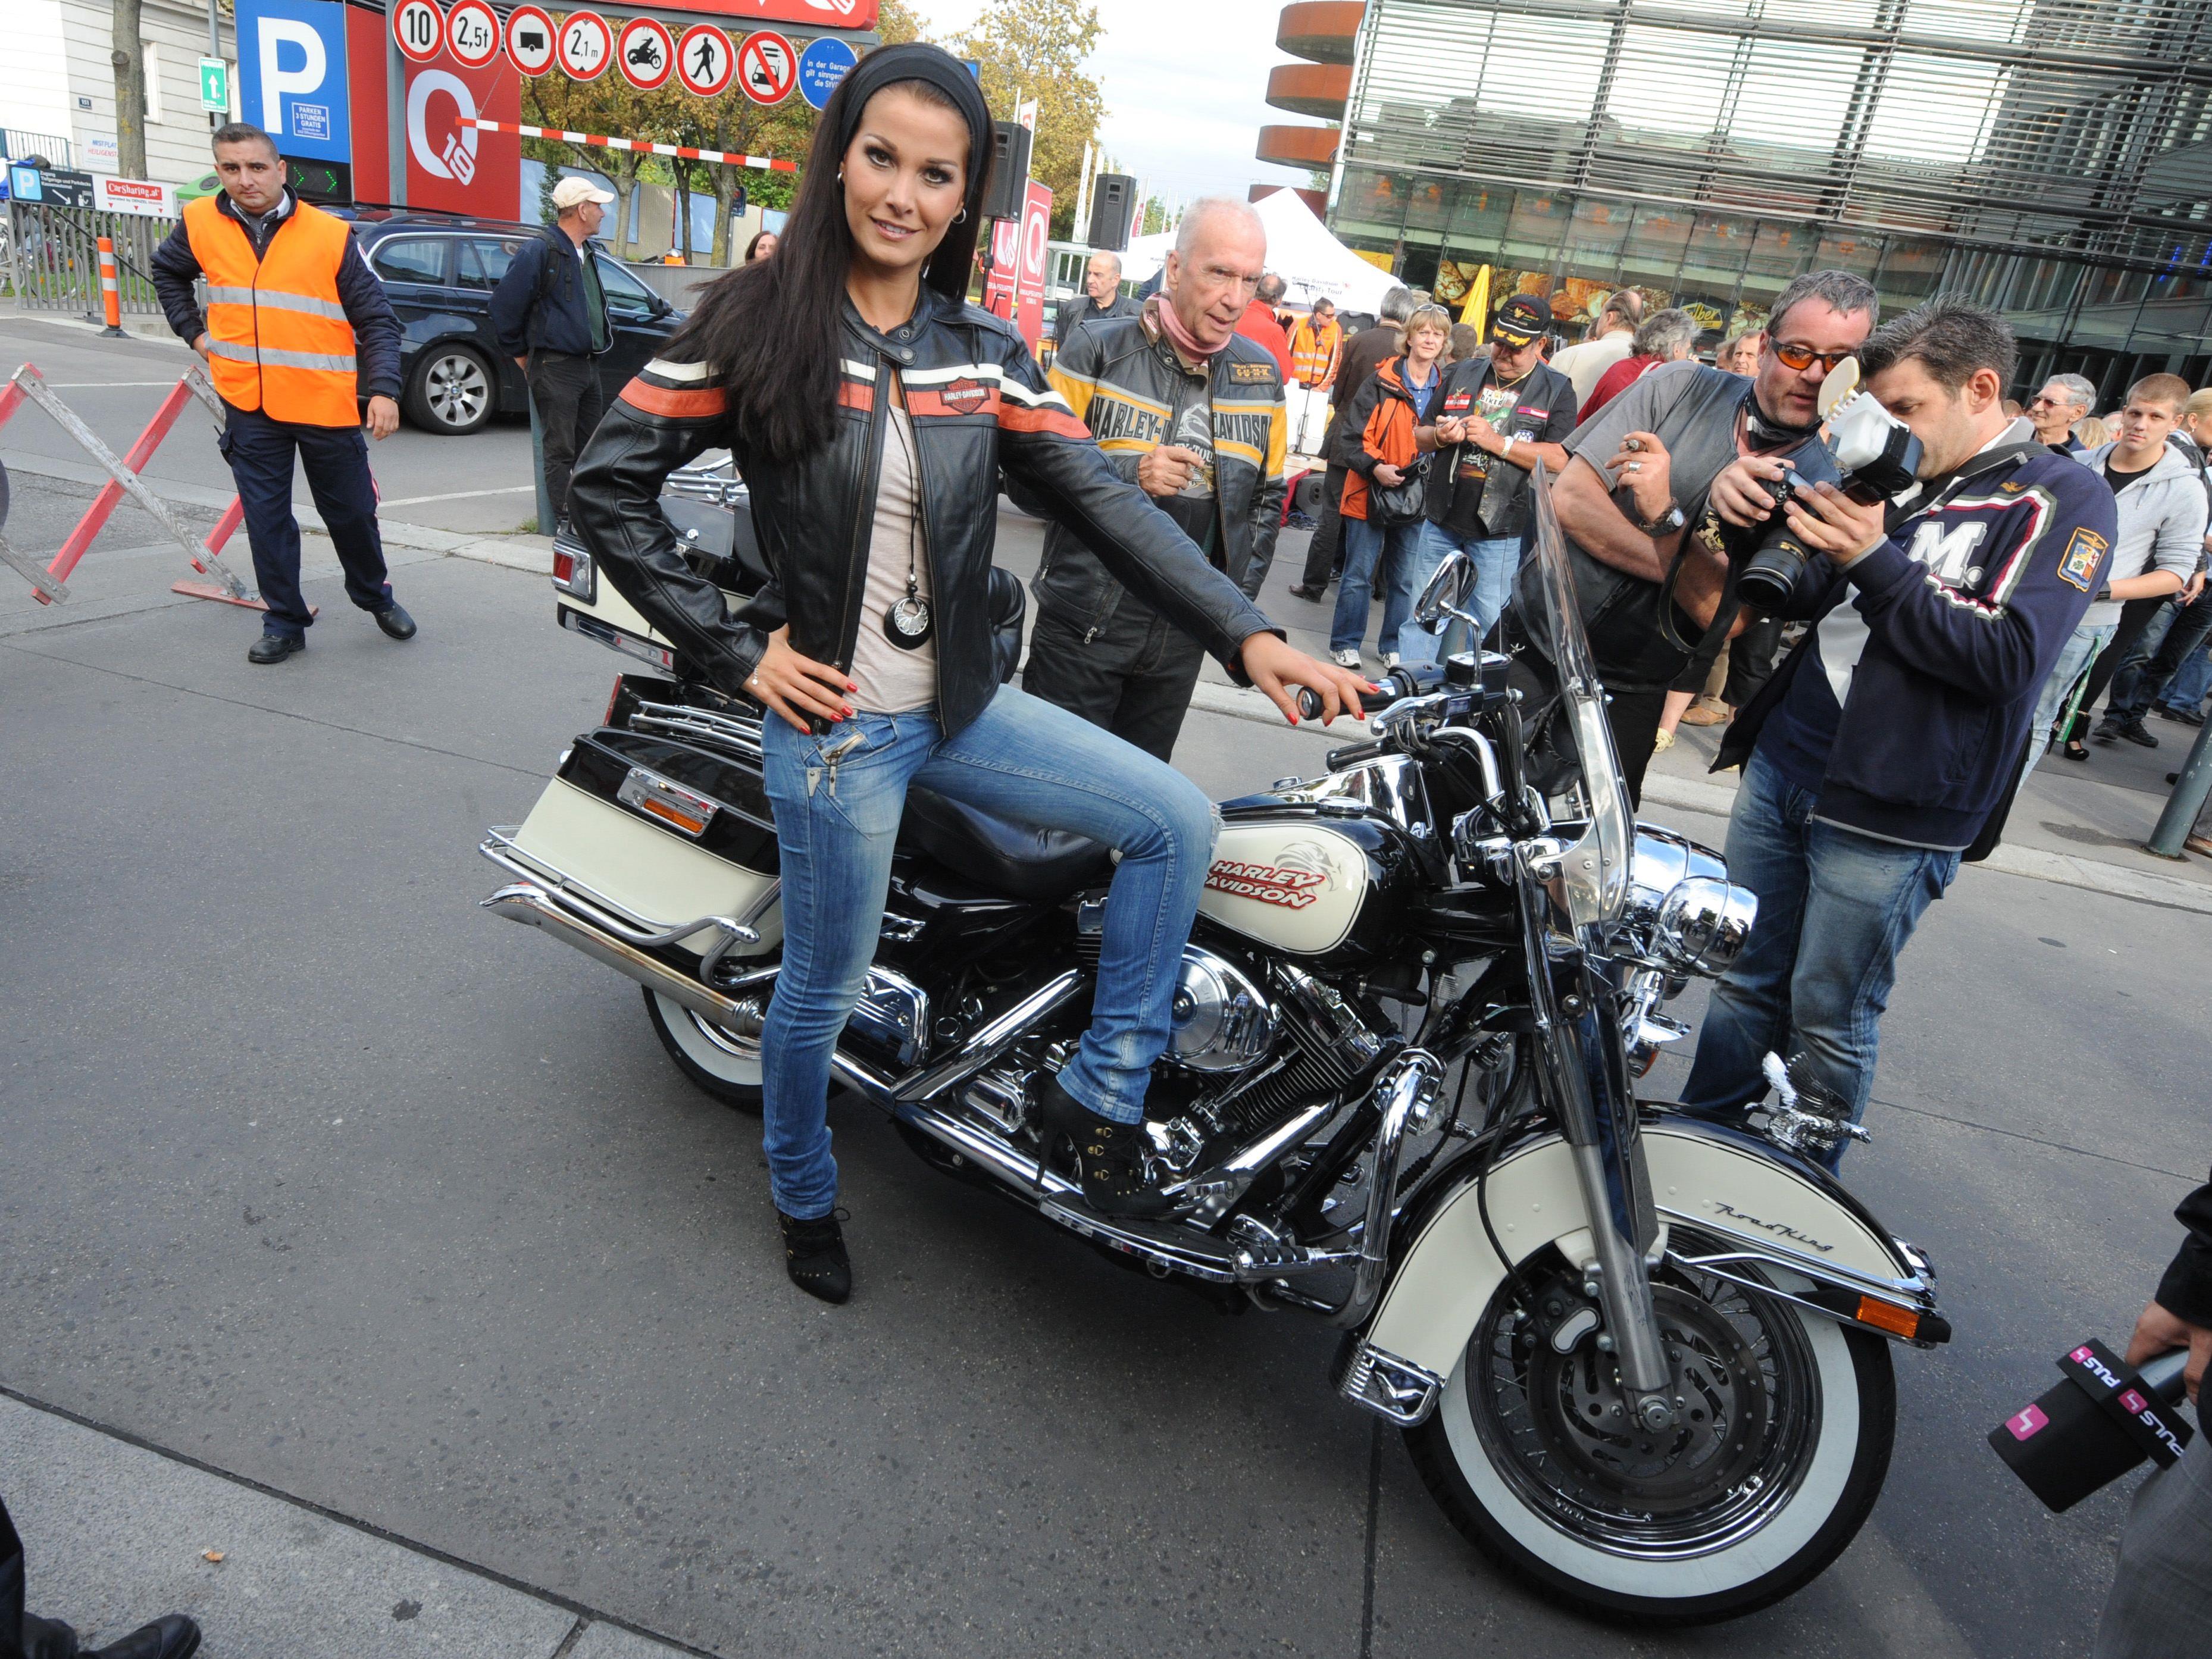 Am 10. August startet die Harley Davidson Tour 2017 in Wien.